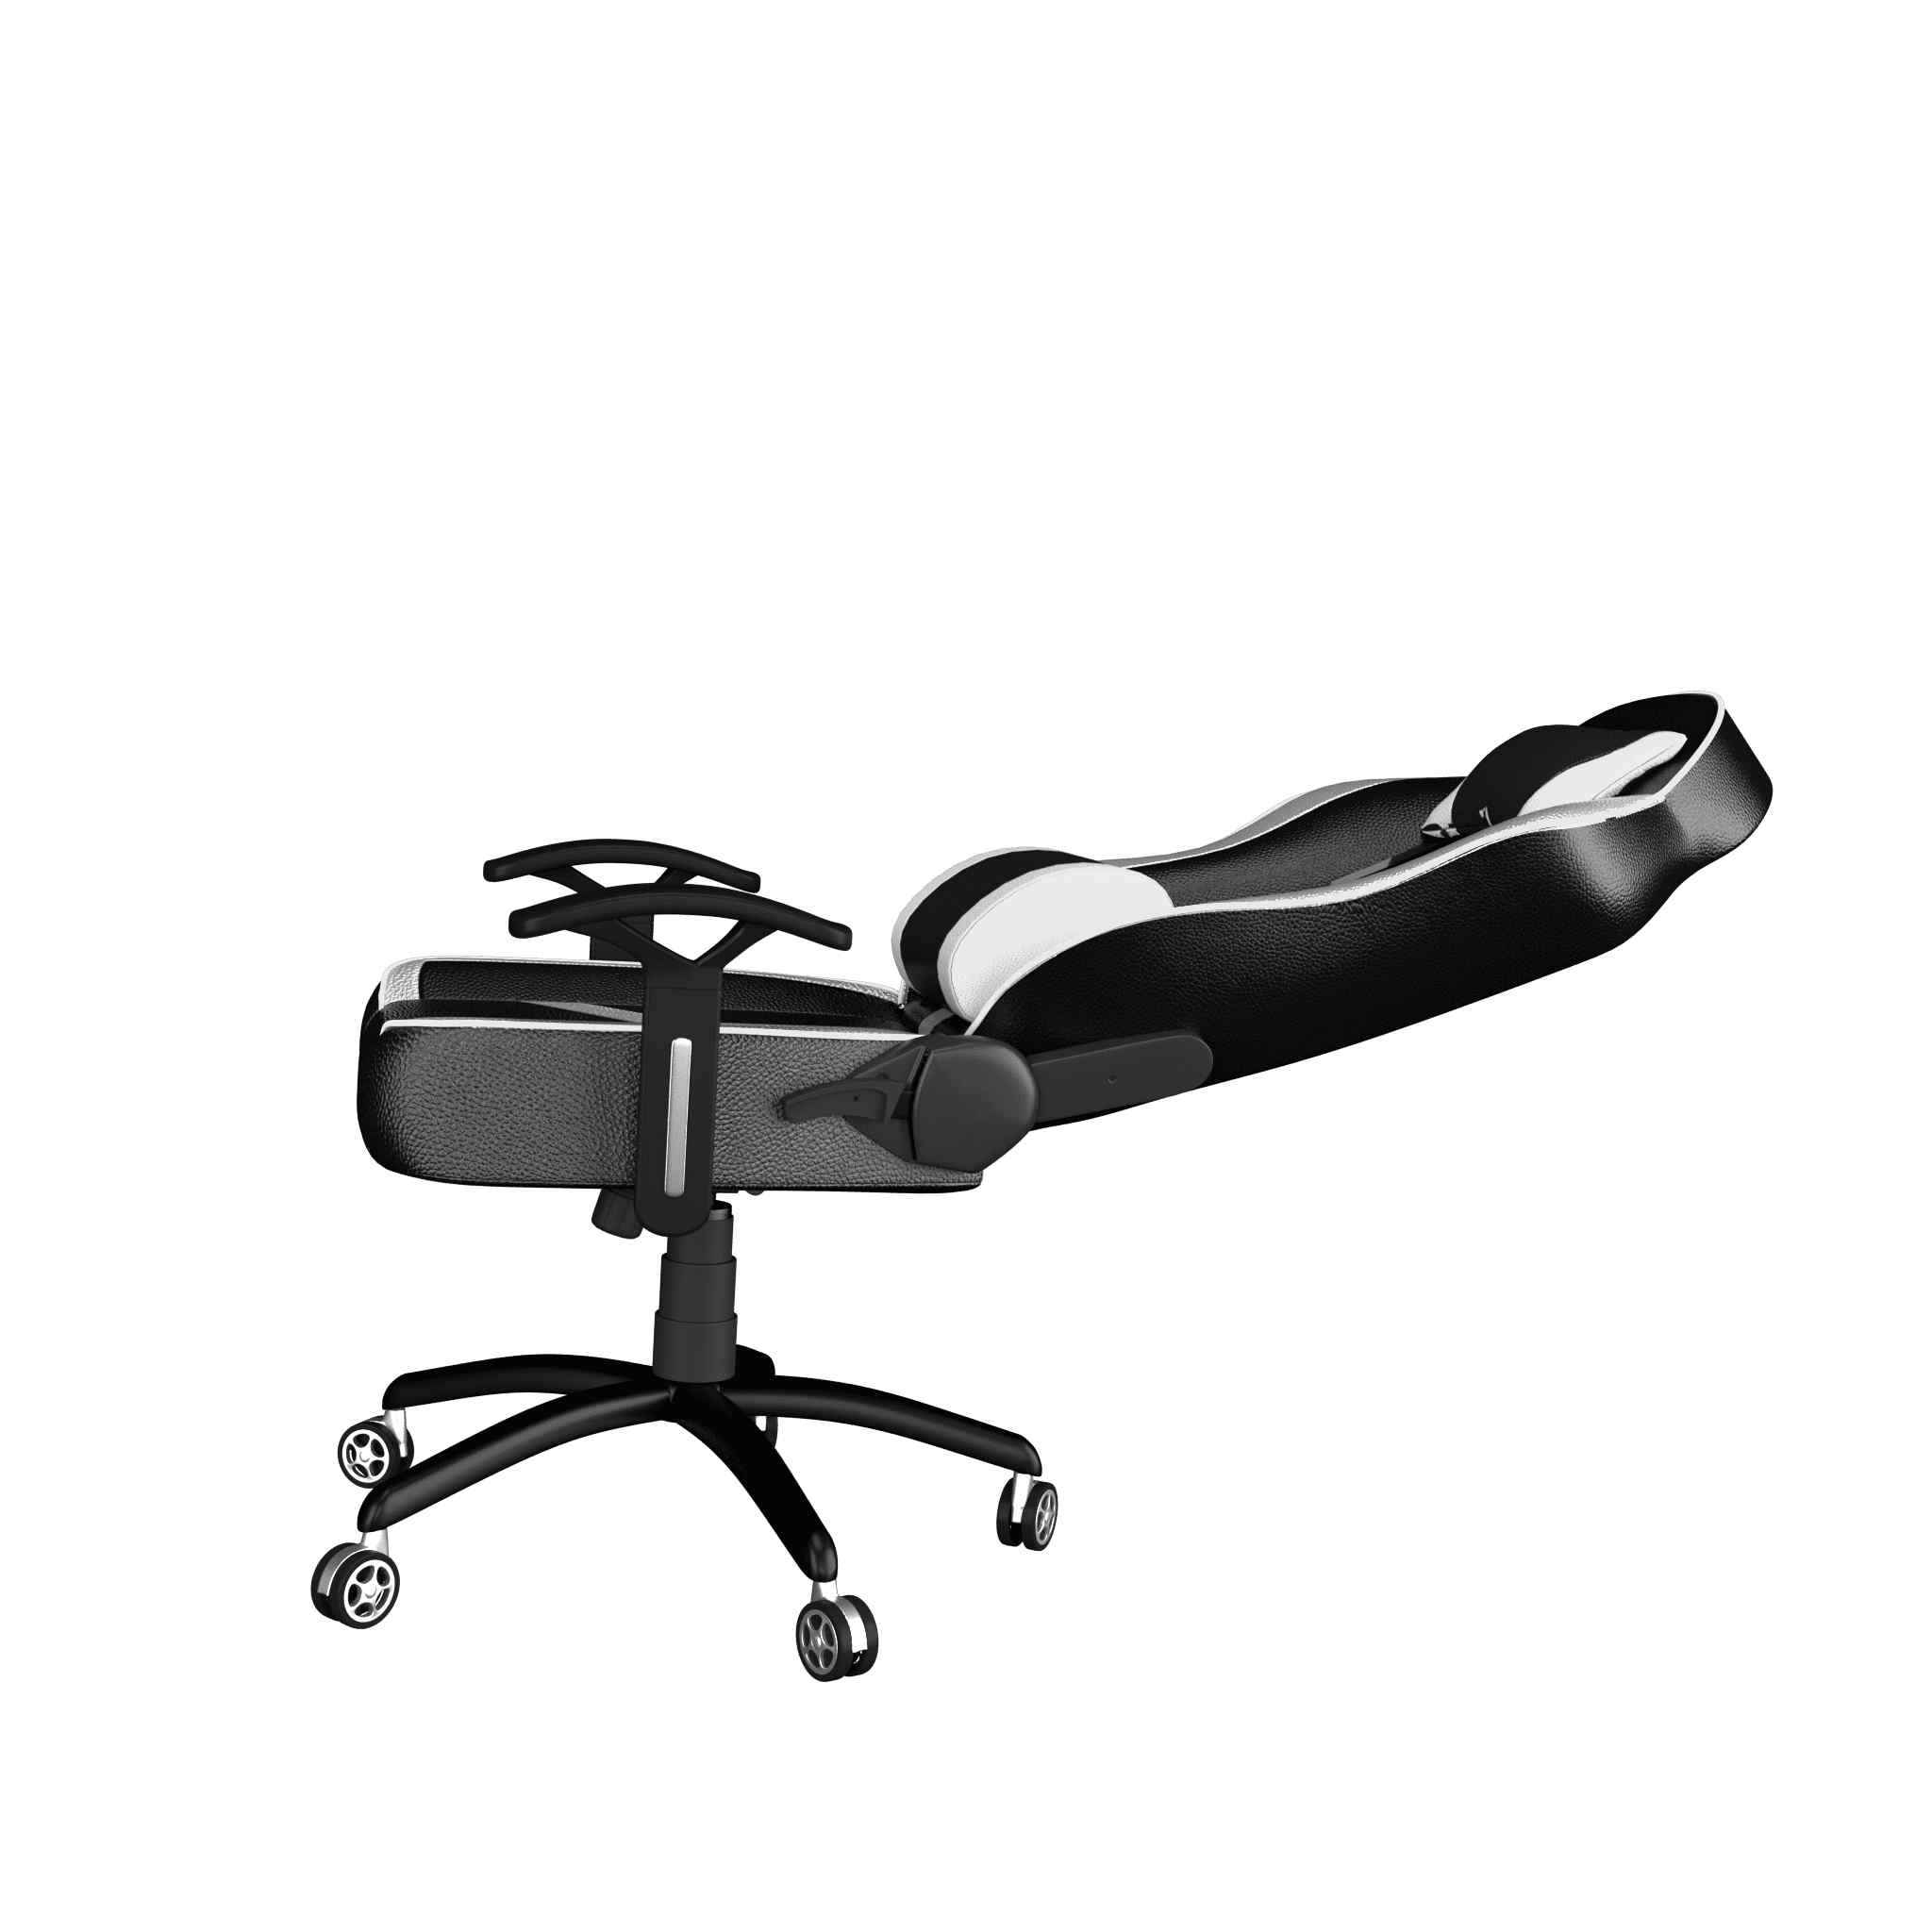 ASE Gaming Ranger Series Gaming Chair (White & Black)